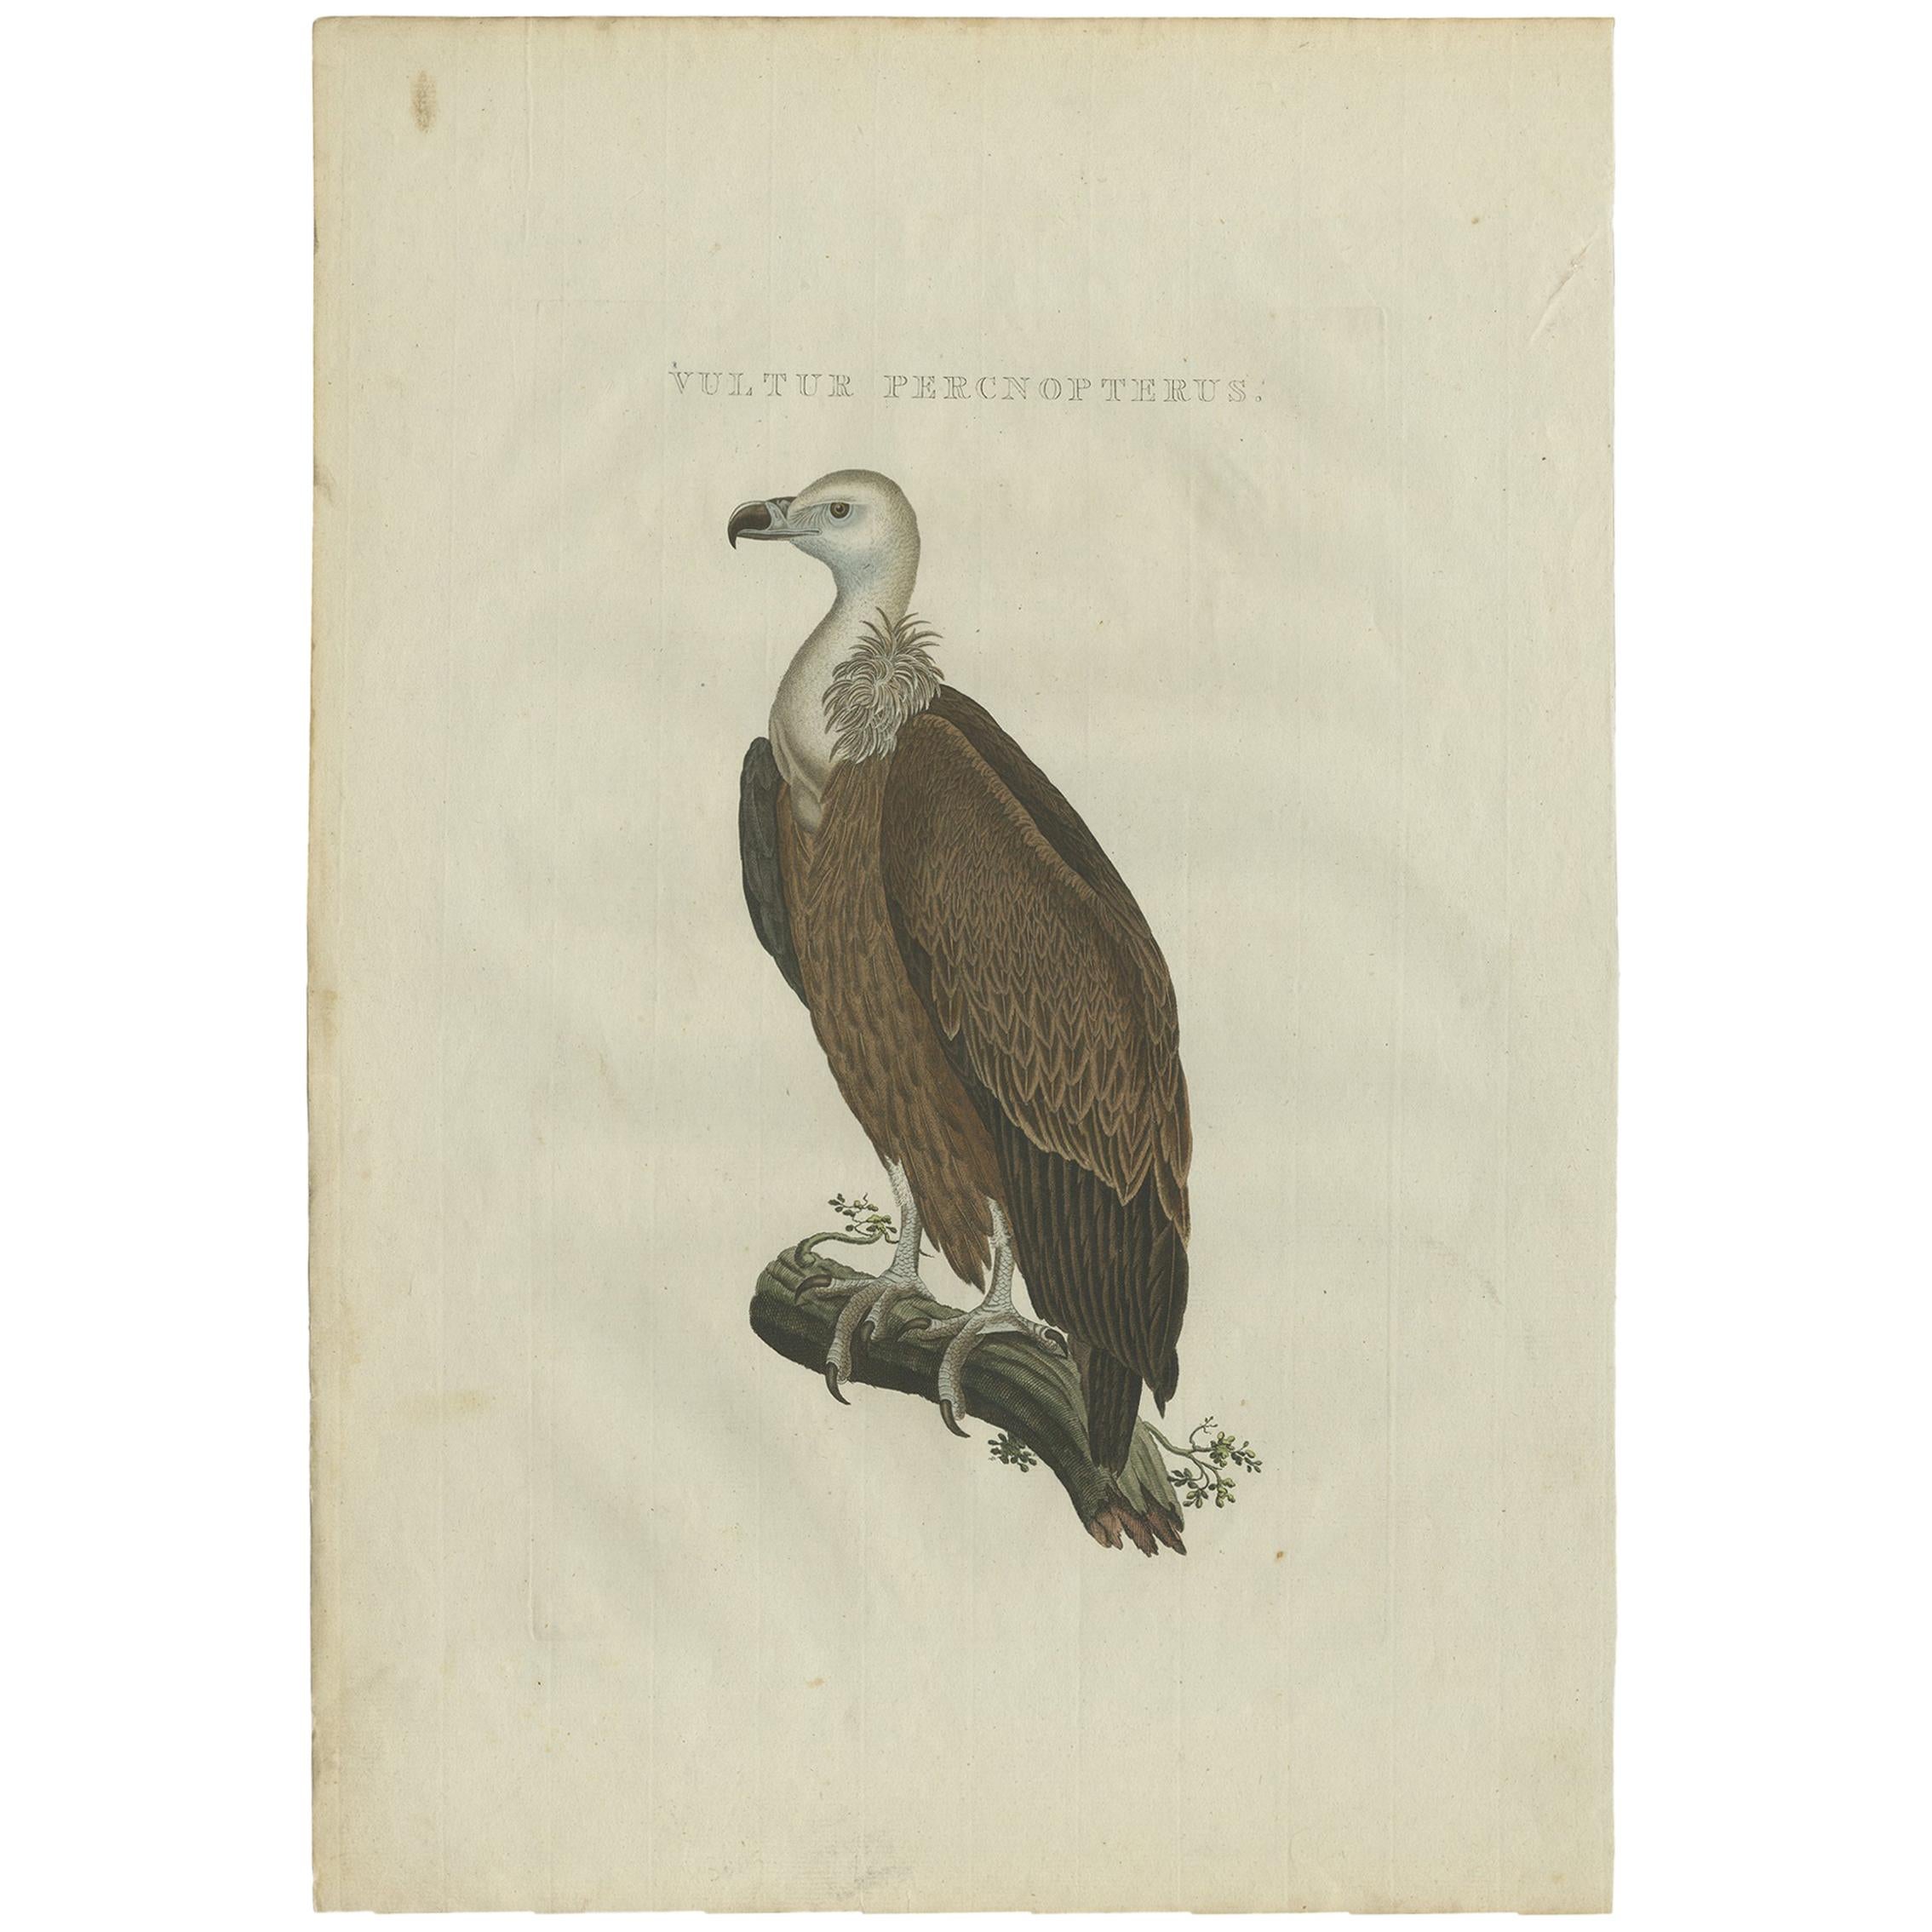 Antique Bird Print of a Vulture by Sepp & Nozeman, 1829